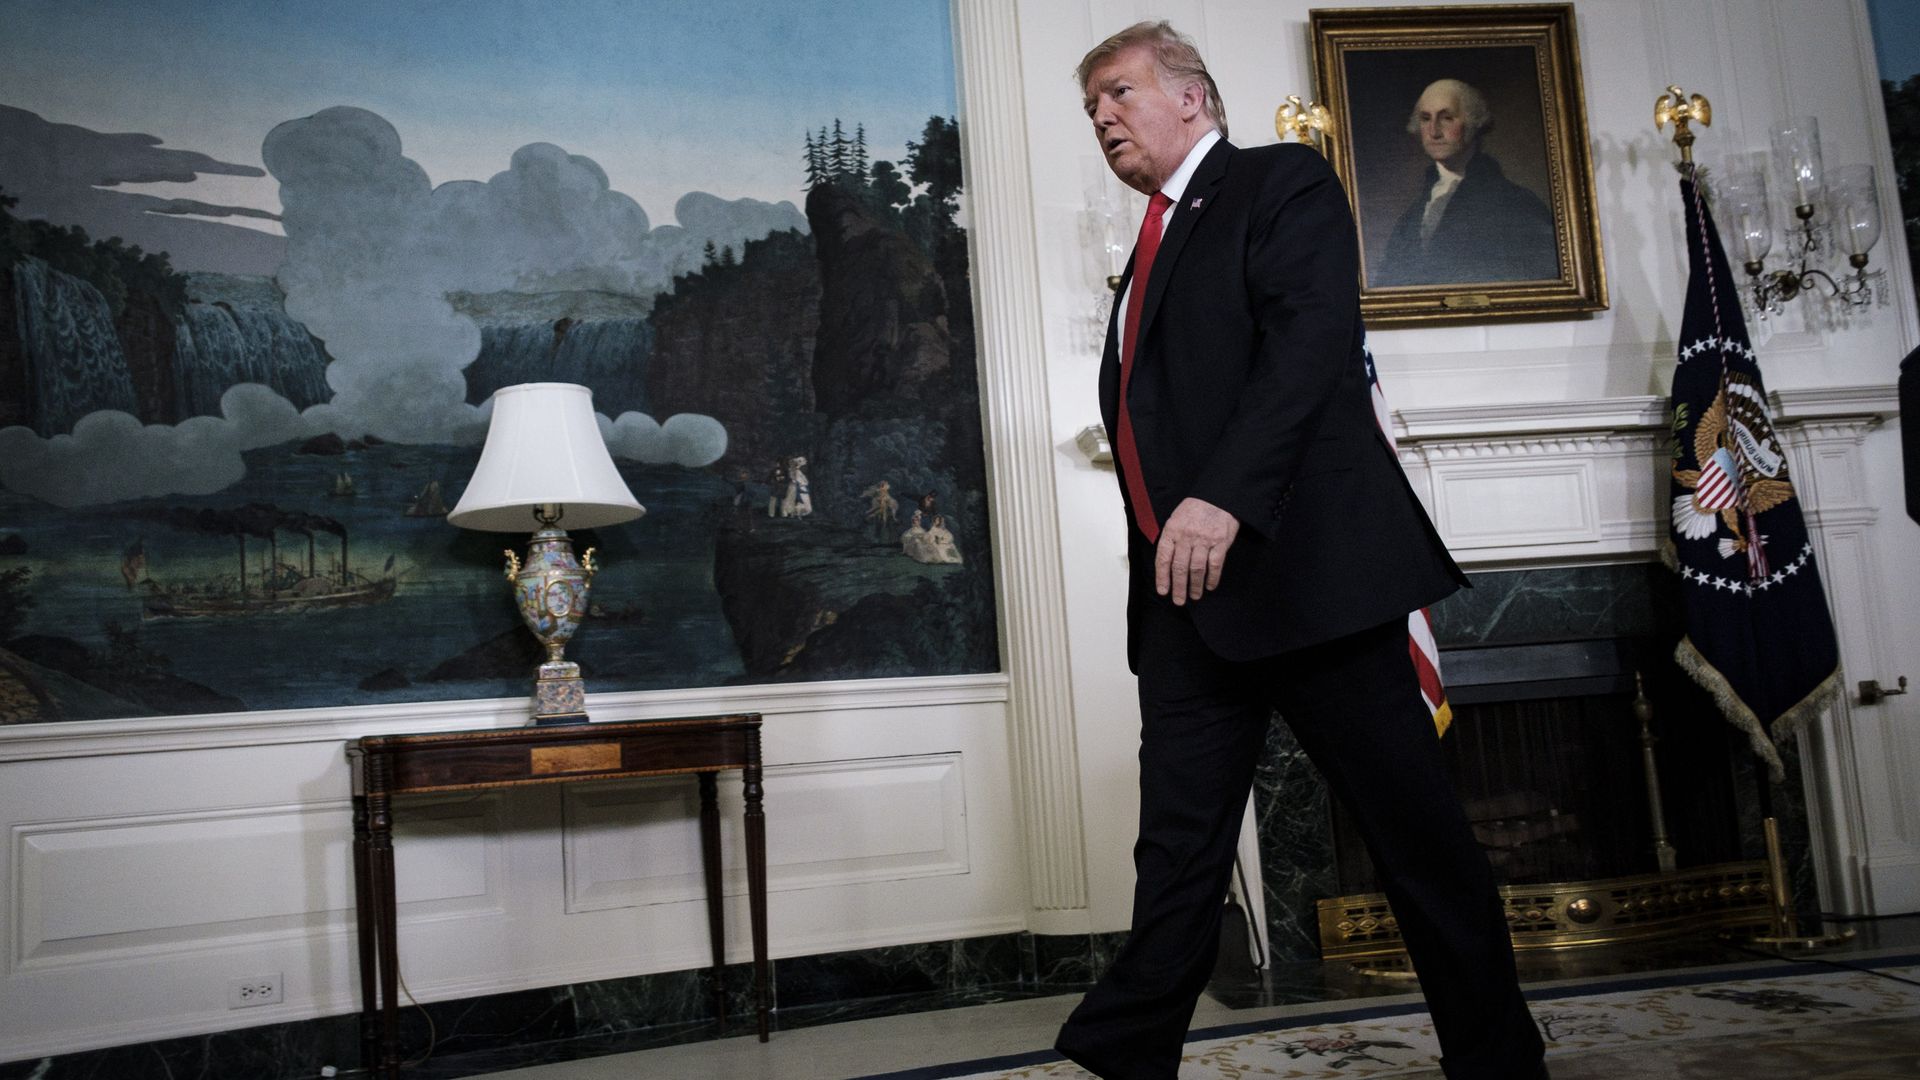 President Trump walking in Oval office